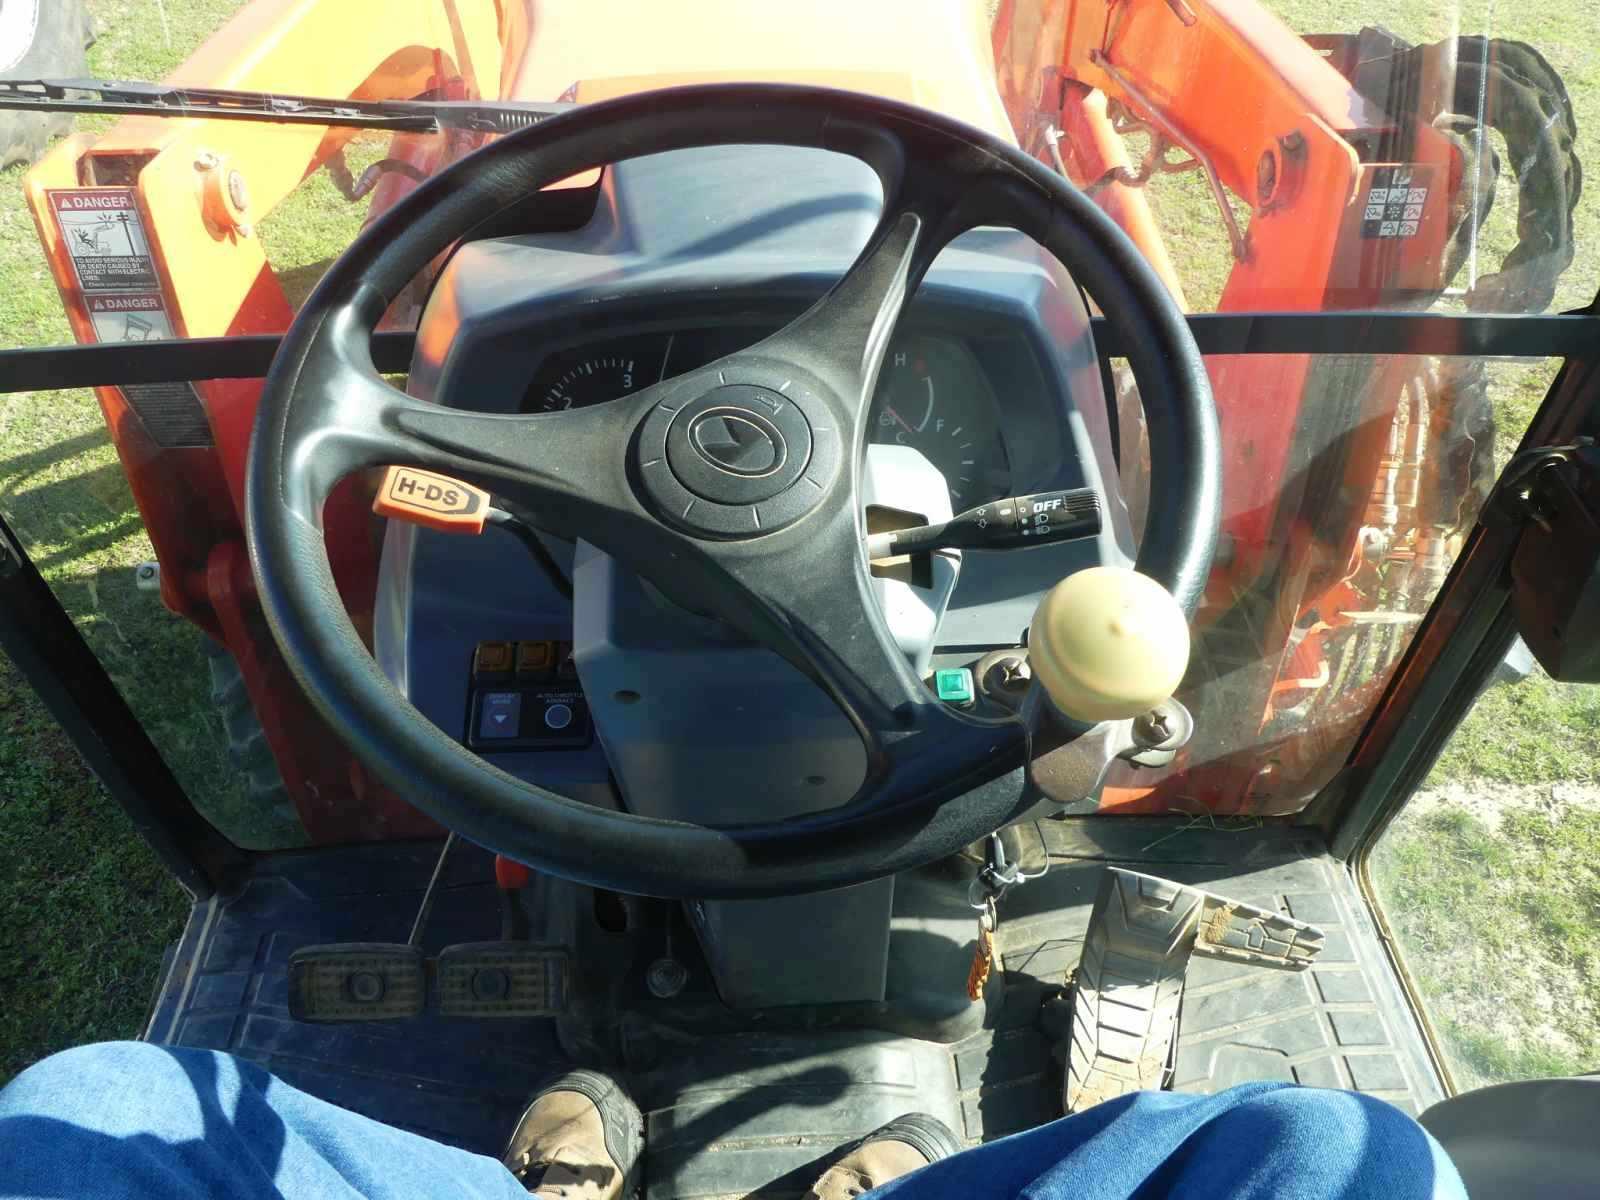 2016 Kubota L5460 MFWD Tractor, s/n 40554: Encl. Cab, LA1055 Loader w/ Bkt.